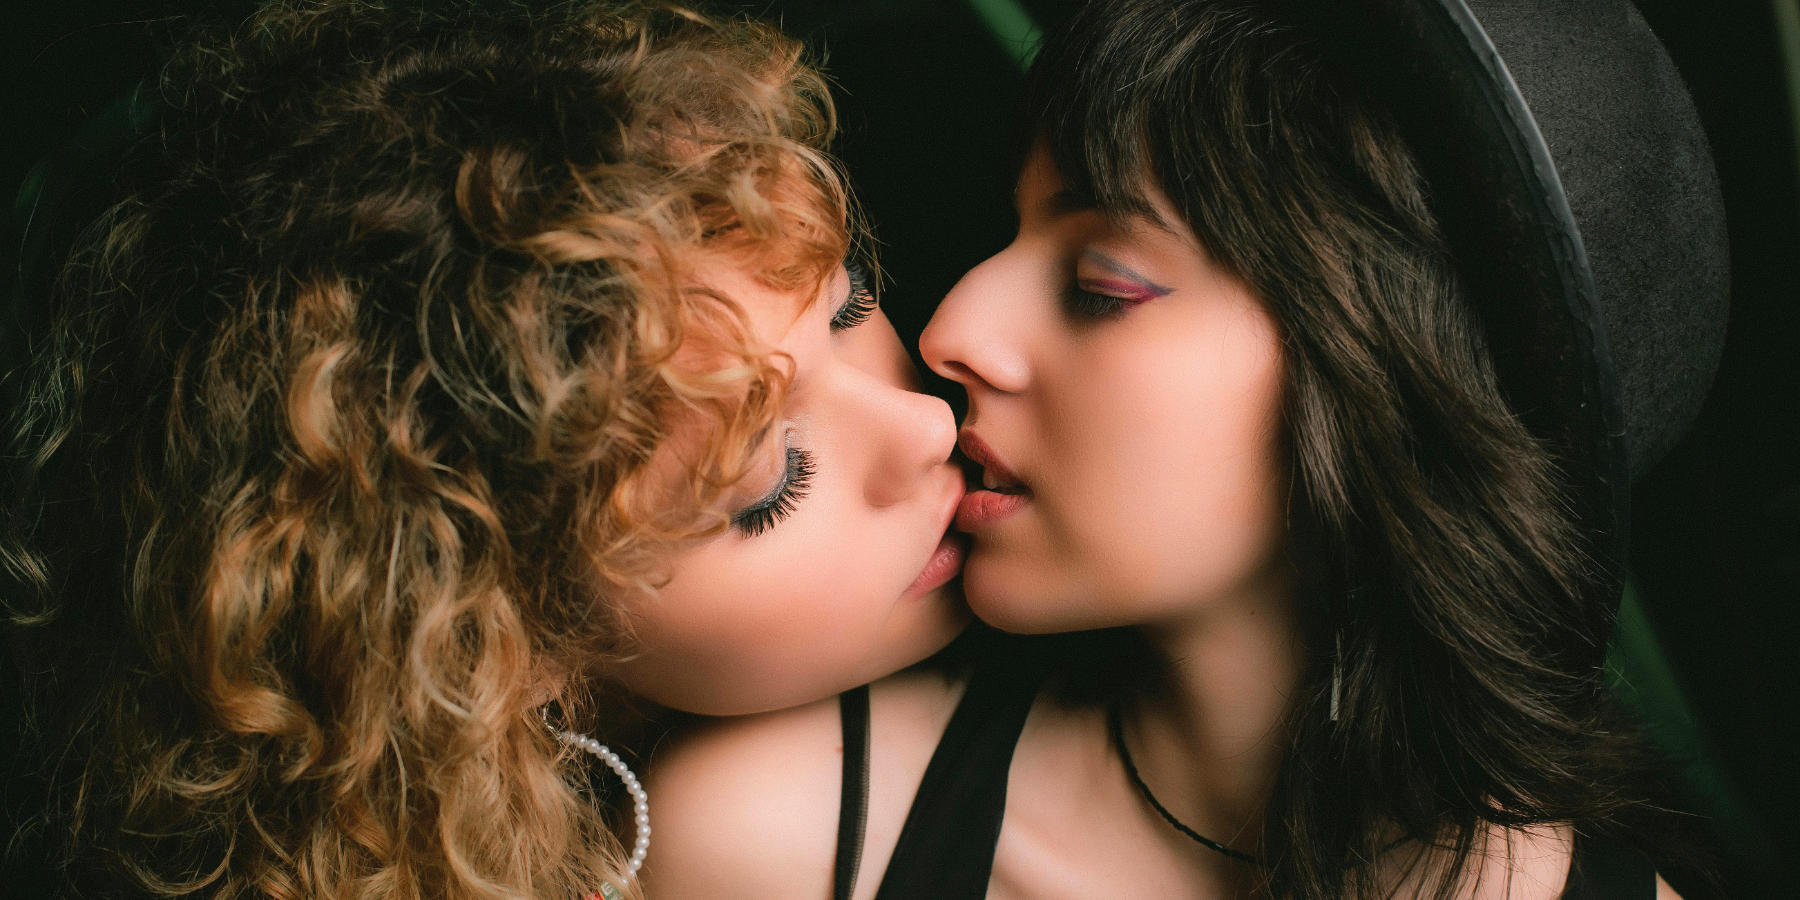 Zwei Frauen im 80er-Style küssen sich.